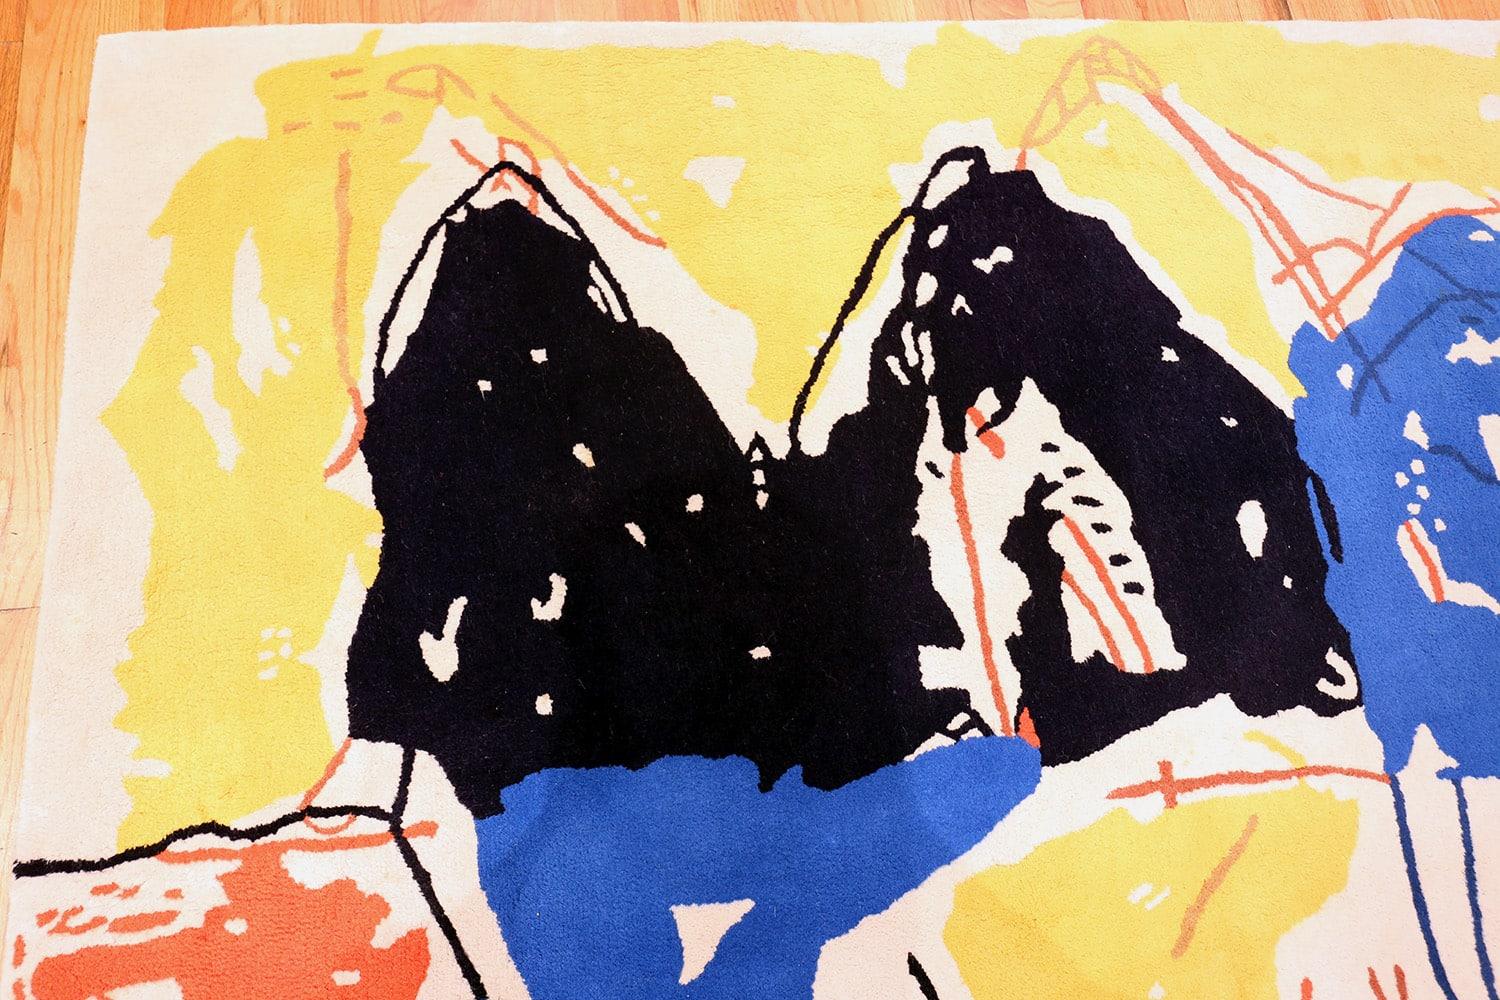 Ein atemberaubender gelber, schwarzer, roter und blauer Kunstteppich des Künstlers Jan Cremer, Herkunftsland / Art des Teppichs: Indische Teppiche, ca. Datum: Vintage / Mitte des 20. Jahrhunderts. Größe: 8 ft 1 in x 6 ft 7 in (2,46 m x 2,01 m)

